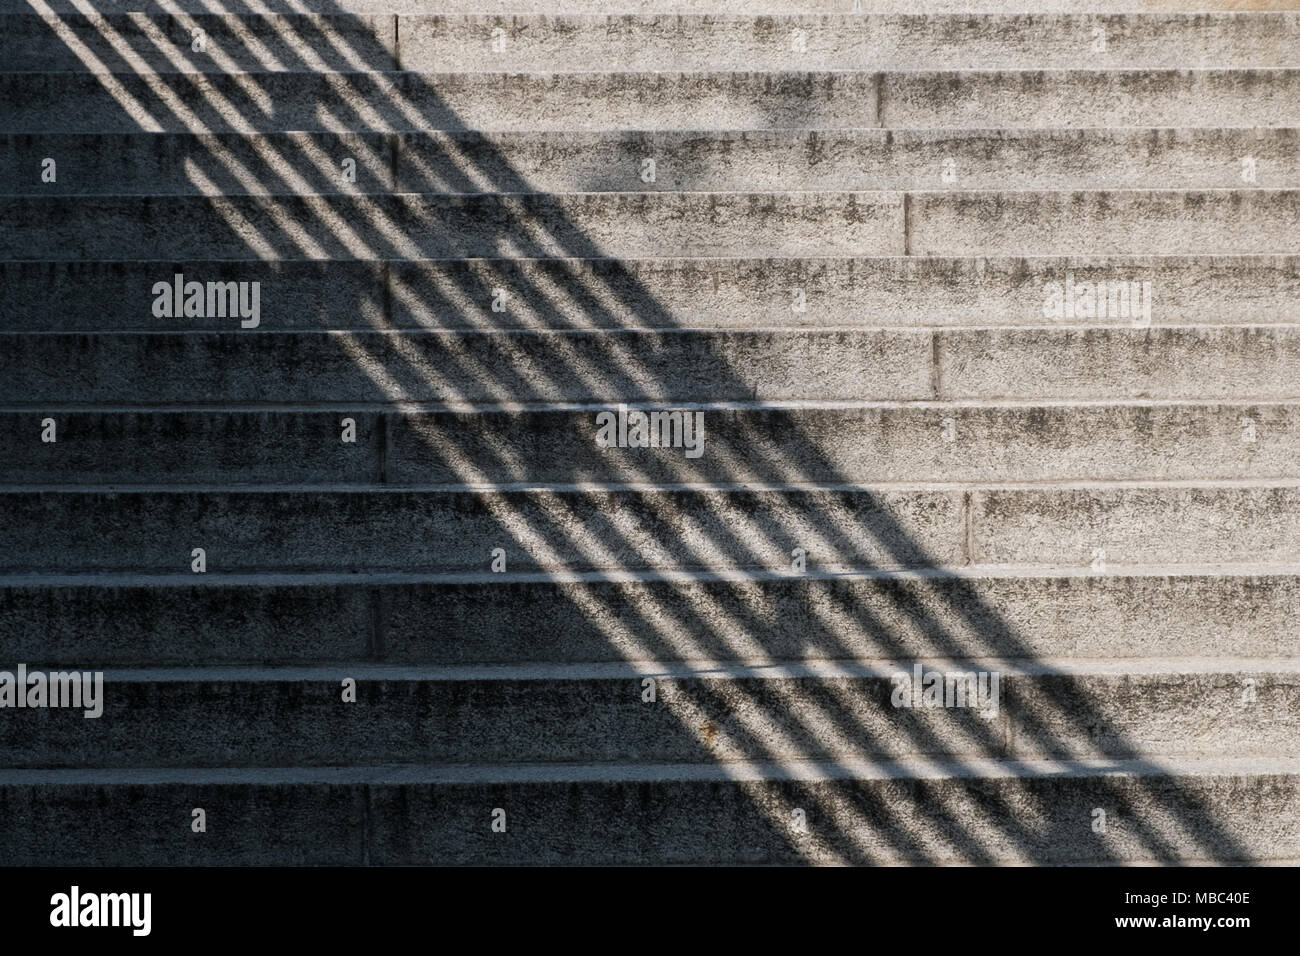 Schatten auf Treppe im Freien - Beton Treppe mit Sonnenlicht und diagonal Schatten Stockfoto